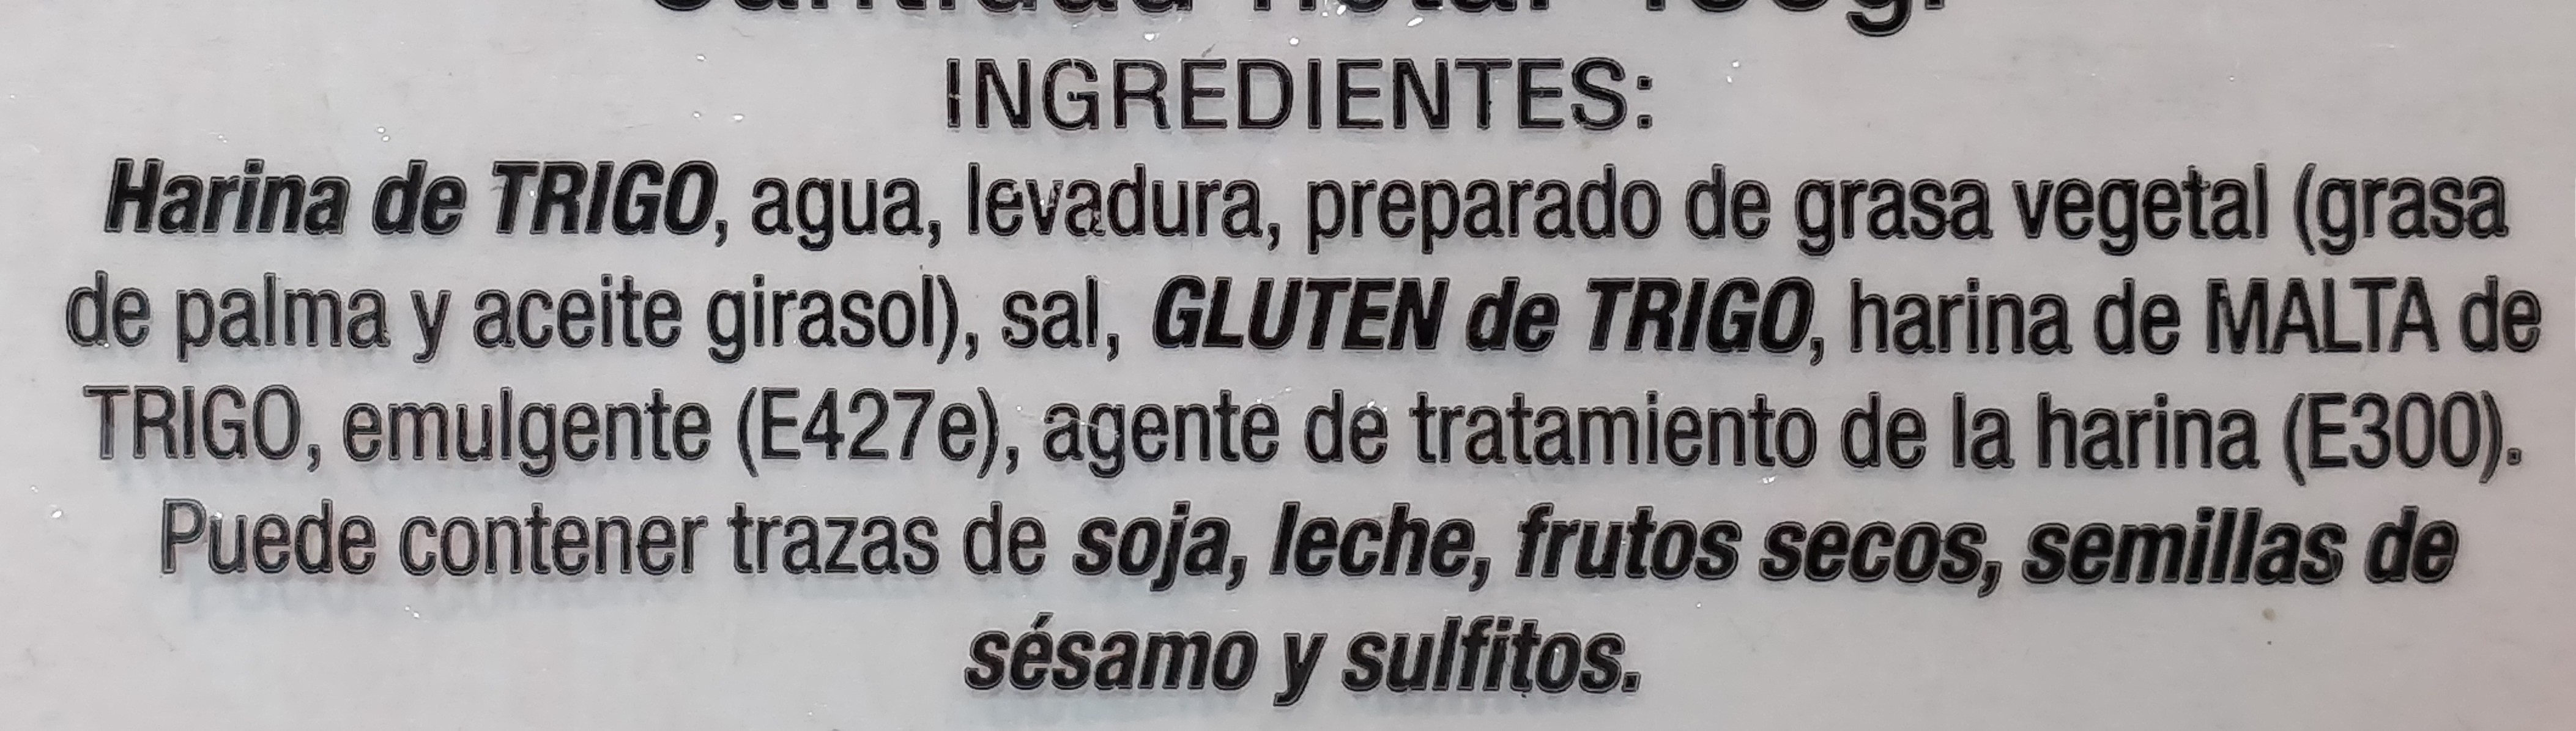 11 panecillos - Ingredients - es